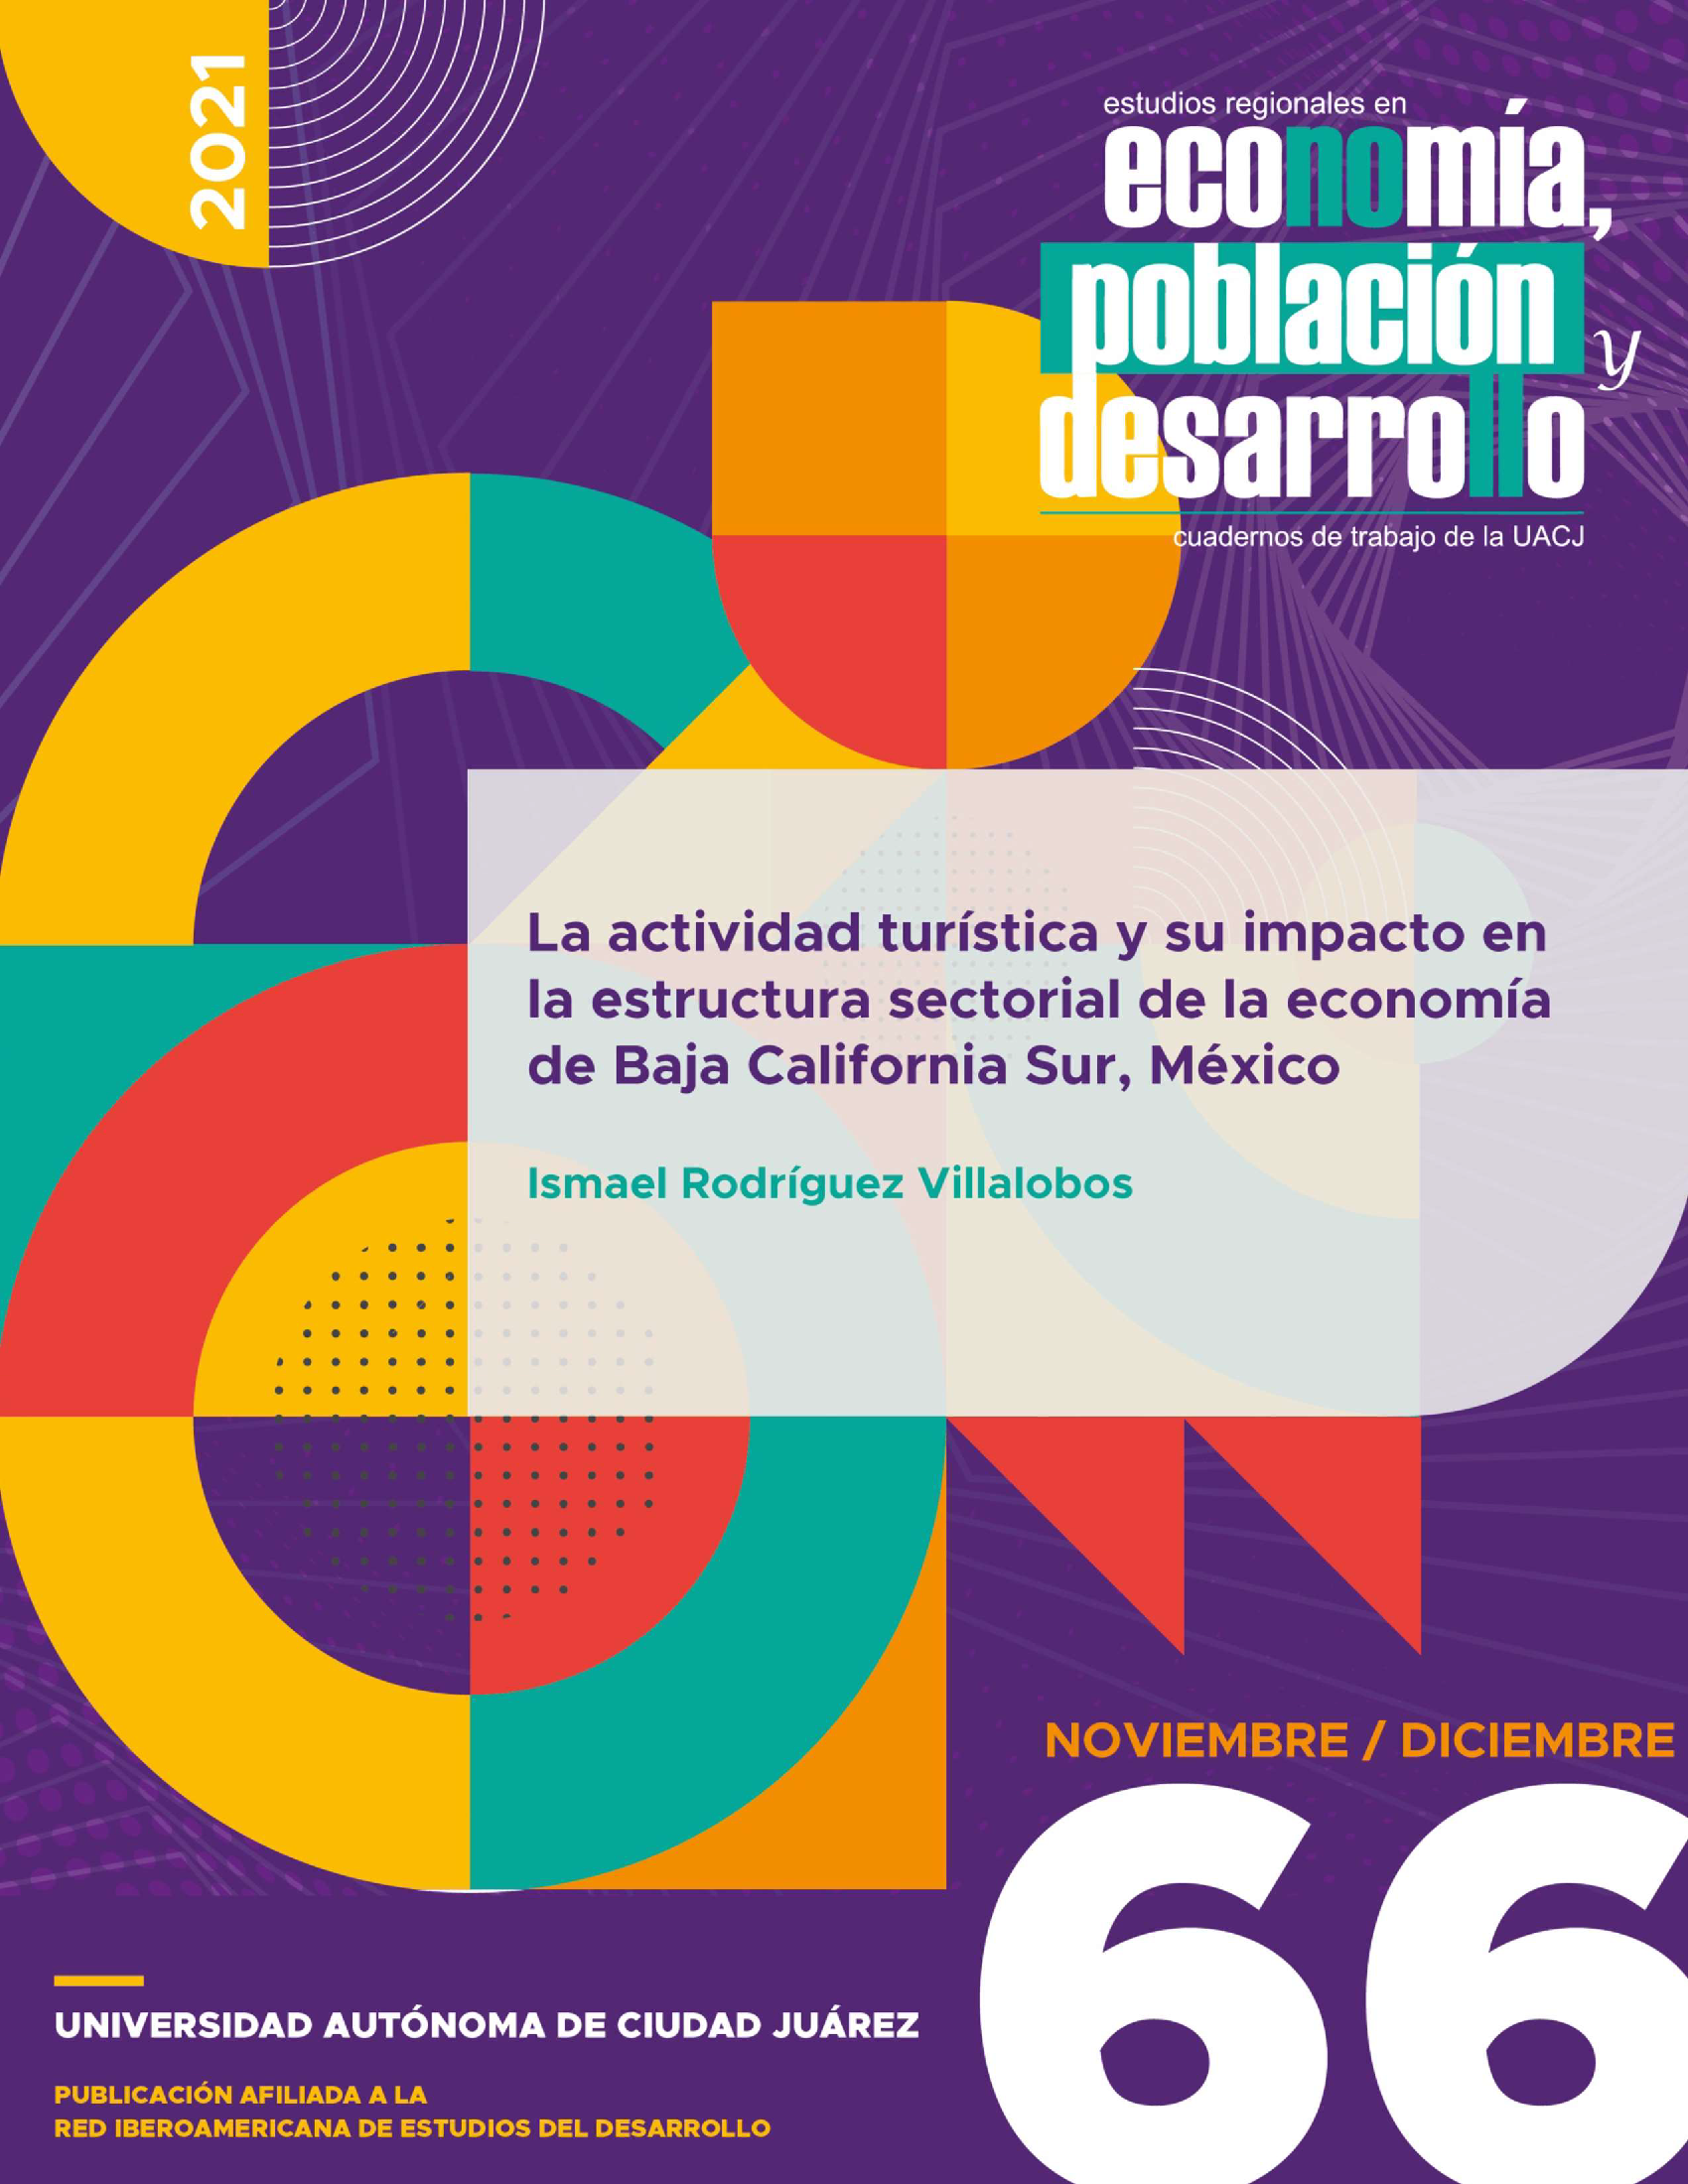 La actividad turística y su impacto en la estructura sectorial de la economía de Baja California Sur, México